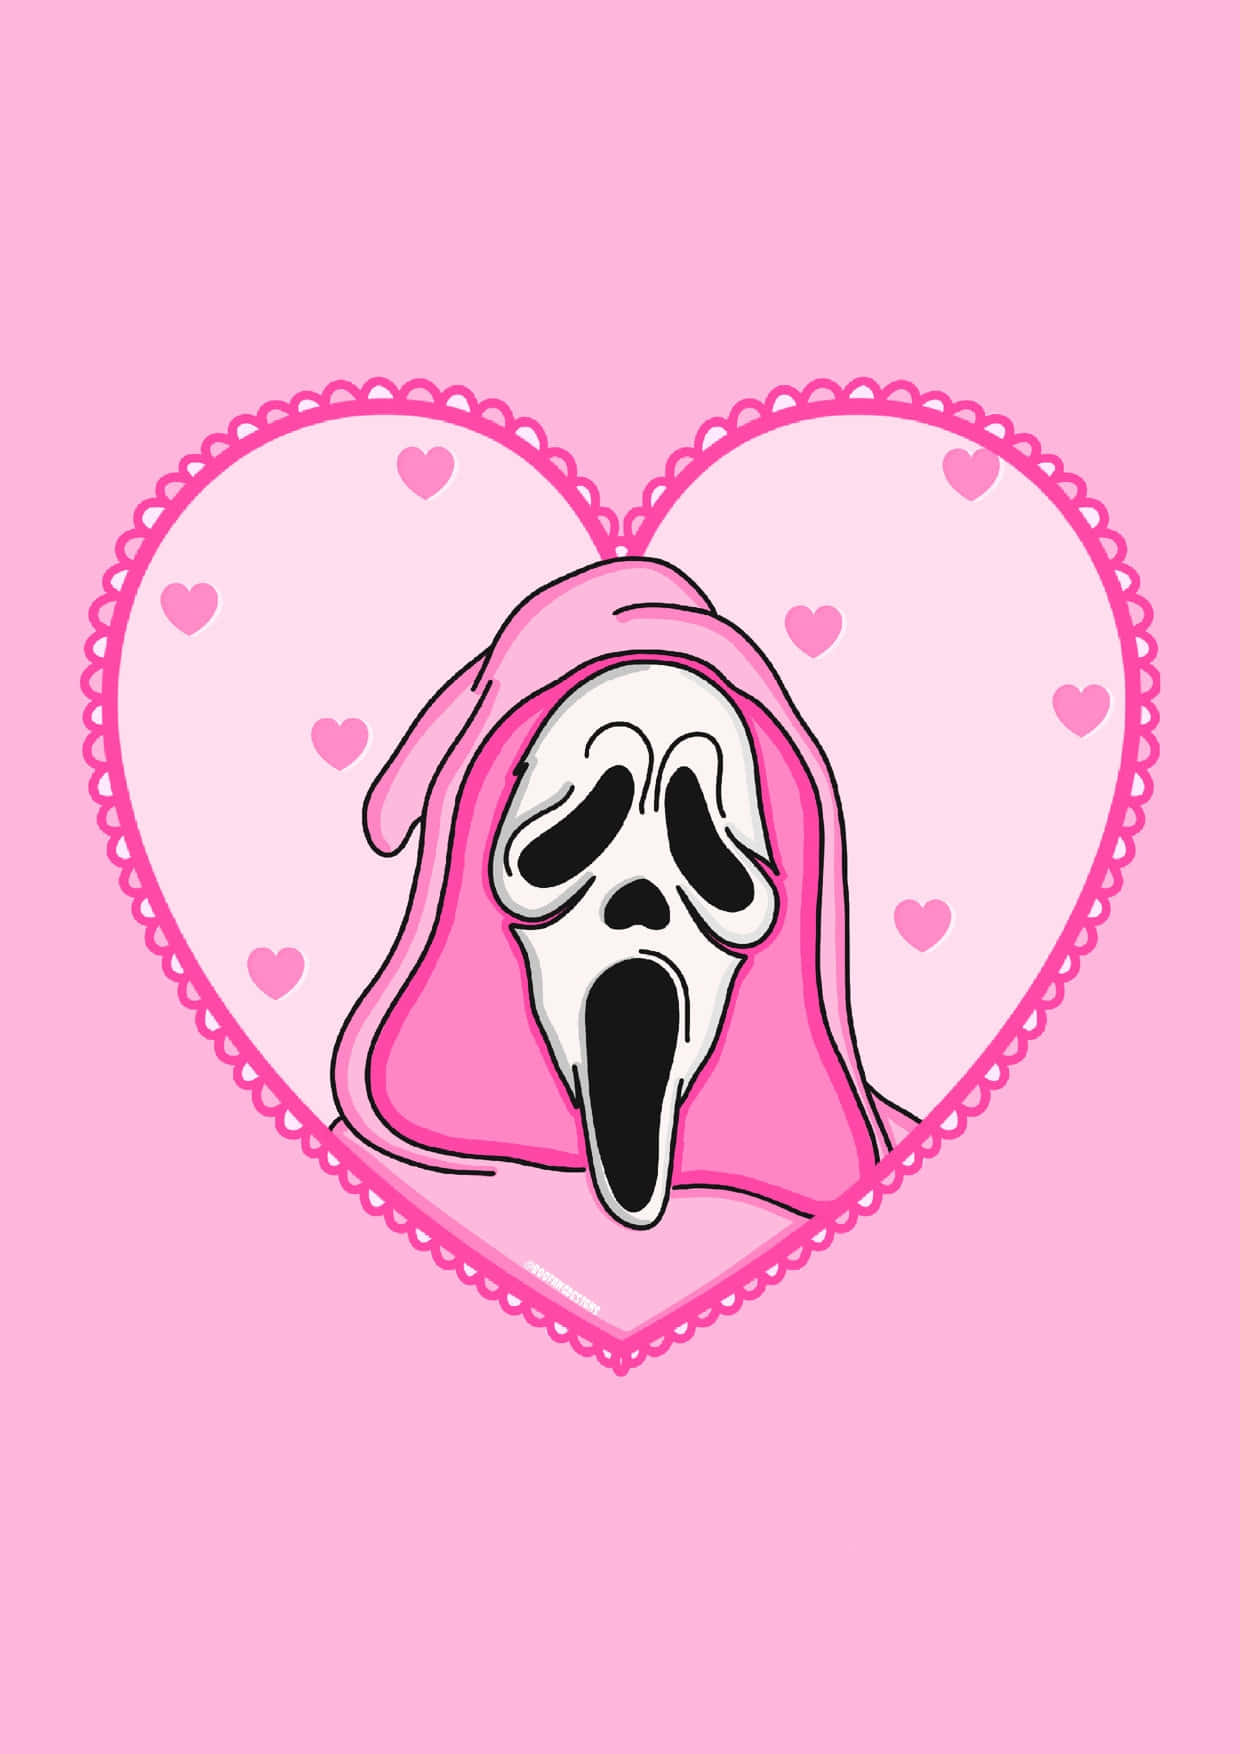 Download Scream Movie Pink Cute Ghostface Wallpaper